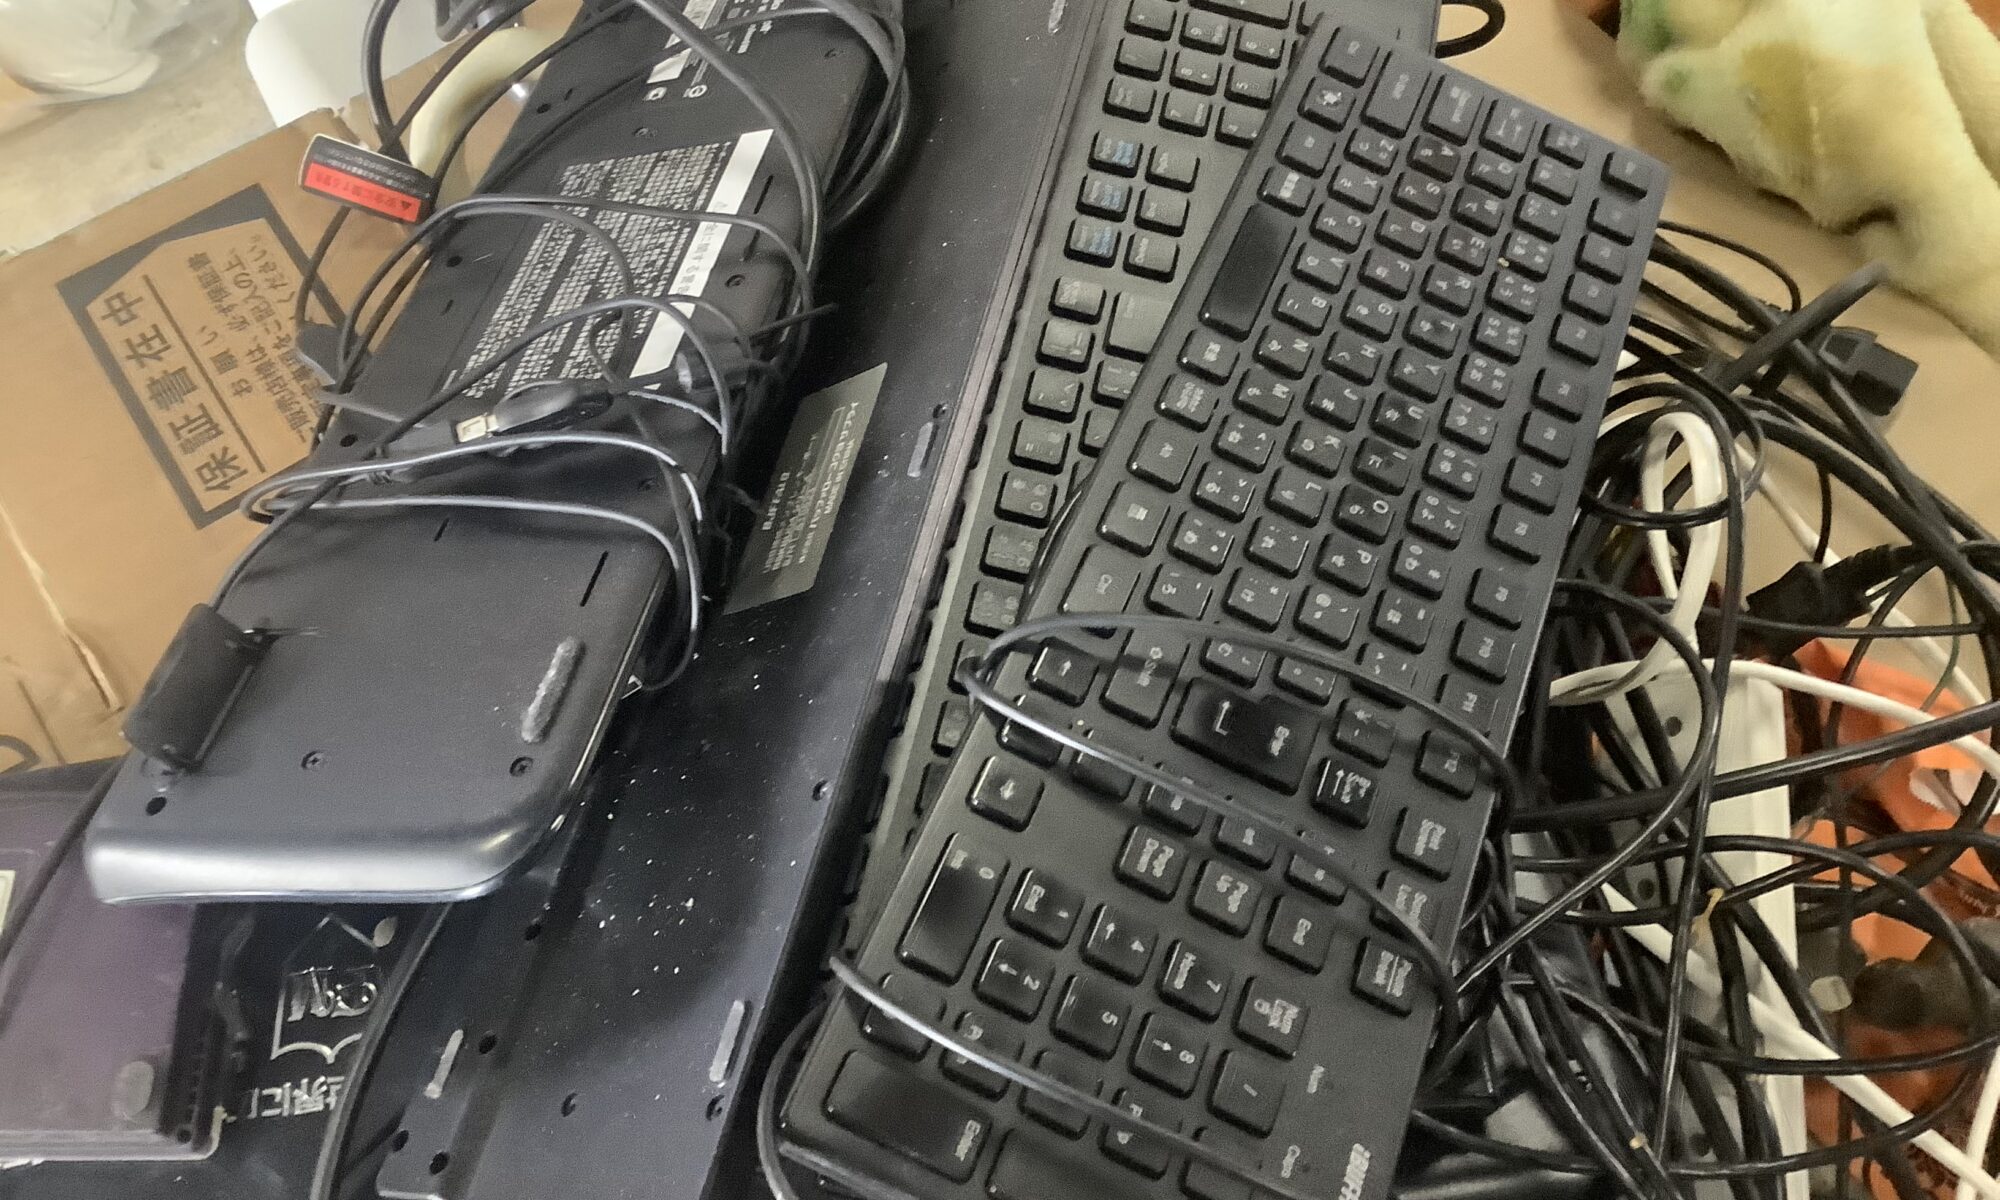 福山市元町で回収したパソコンキーボード